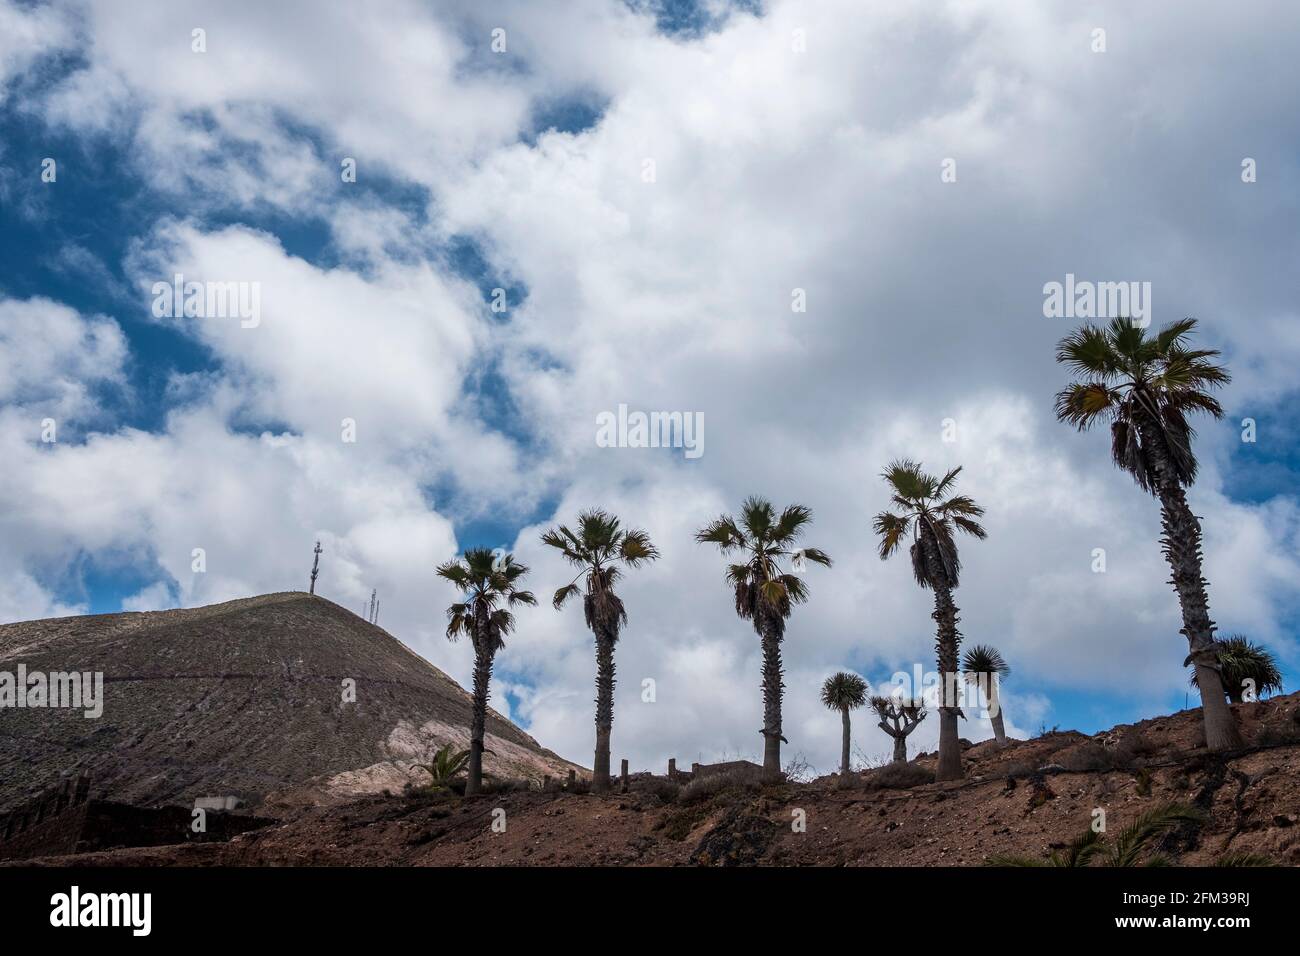 Gran Canaria, eine spanische Kanarische Insel vor der Nordwestküste von Afrika. El Sobradillo. Foto Stock